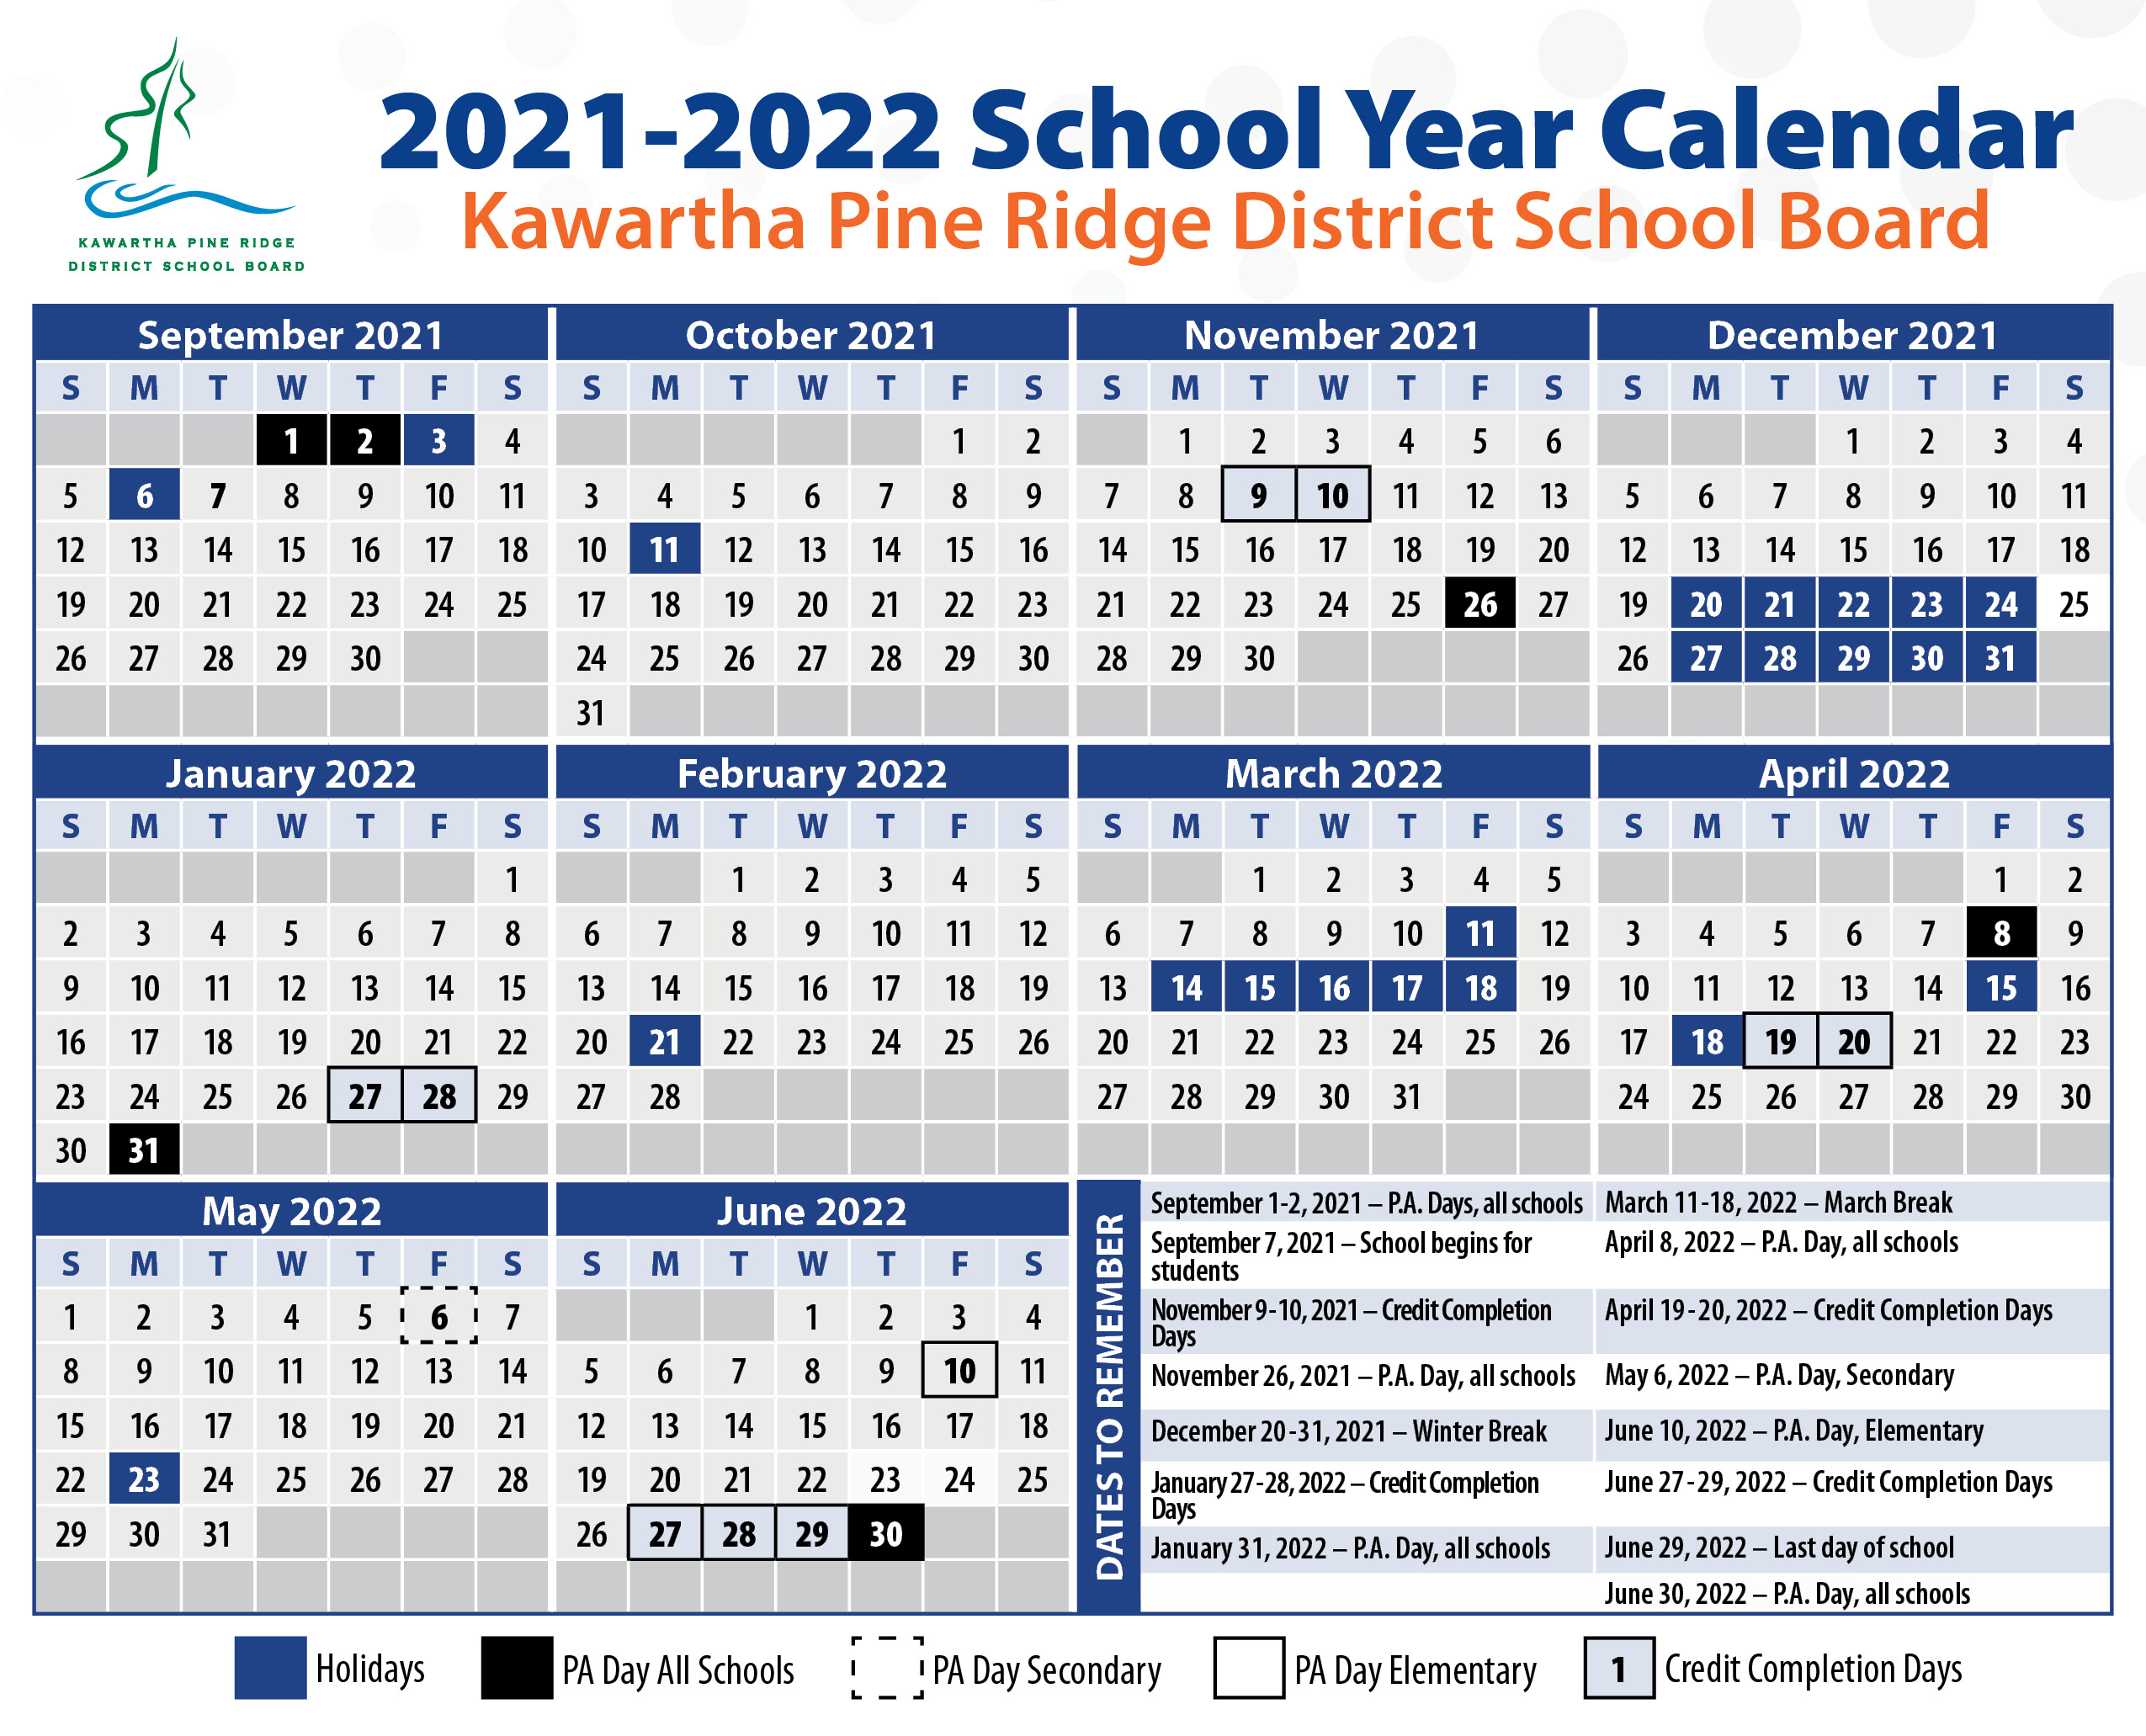 Catch March 4 2022 Calendar